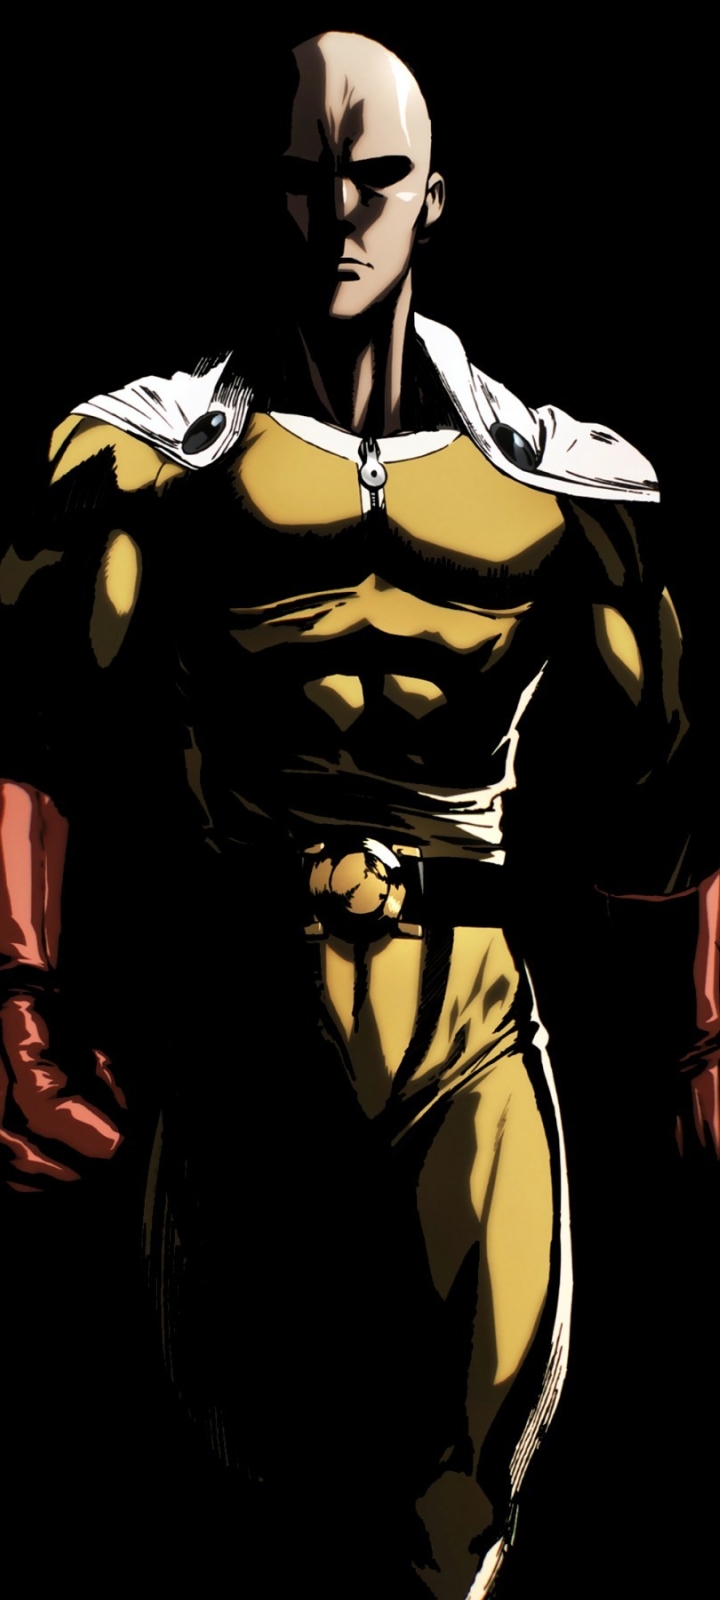 Đam mê bộ truyện tranh One Punch Man? Những bức ảnh nền One Punch Man sẽ khiến bạn cảm thấy thỏa mãn. Hãy xem ngay những hình ảnh độc đáo về nhân vật Saitama, Genos và các chiến binh khác trong thế giới của One Punch Man!